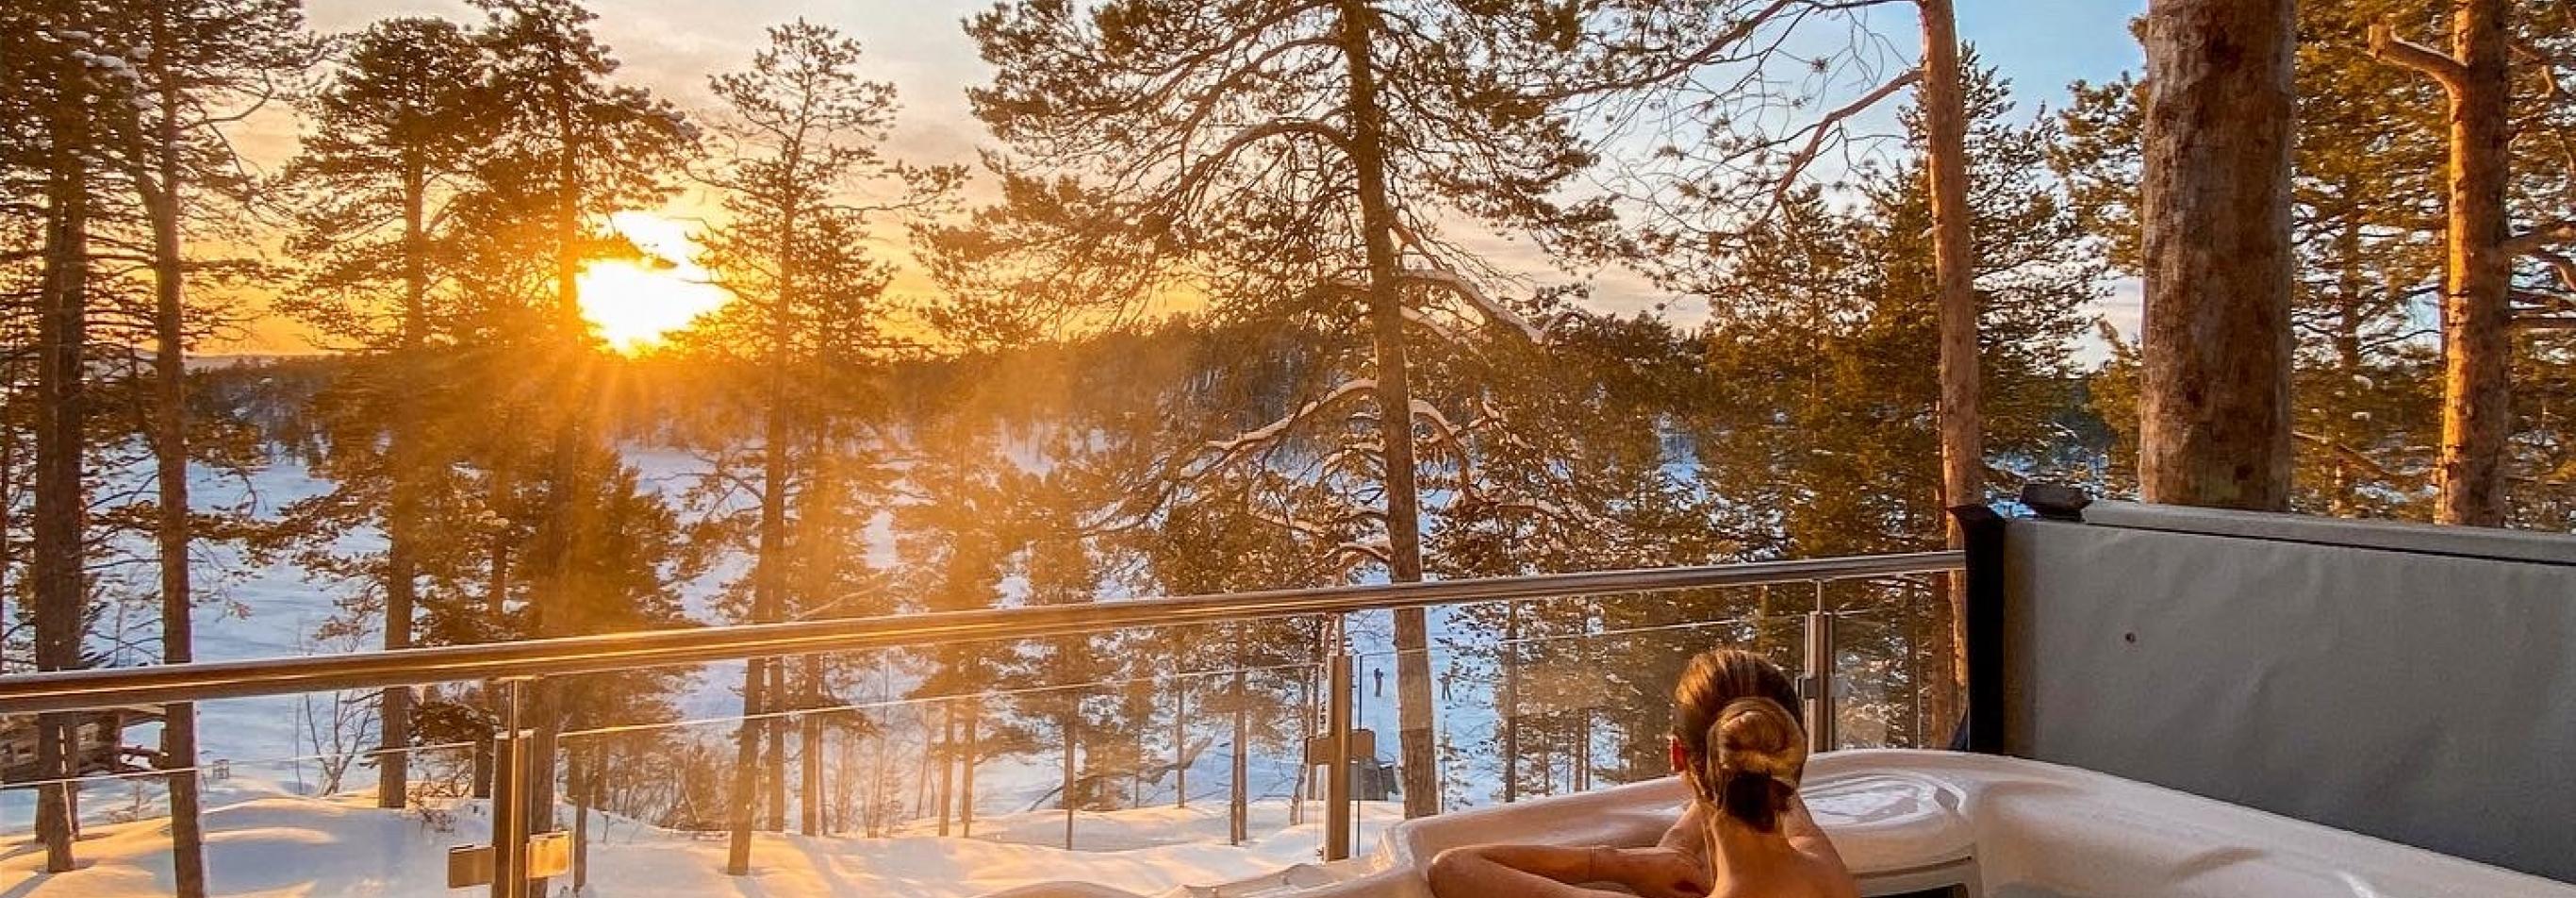 Finlandia - Viaggio di nozze in Lapponia finlandese